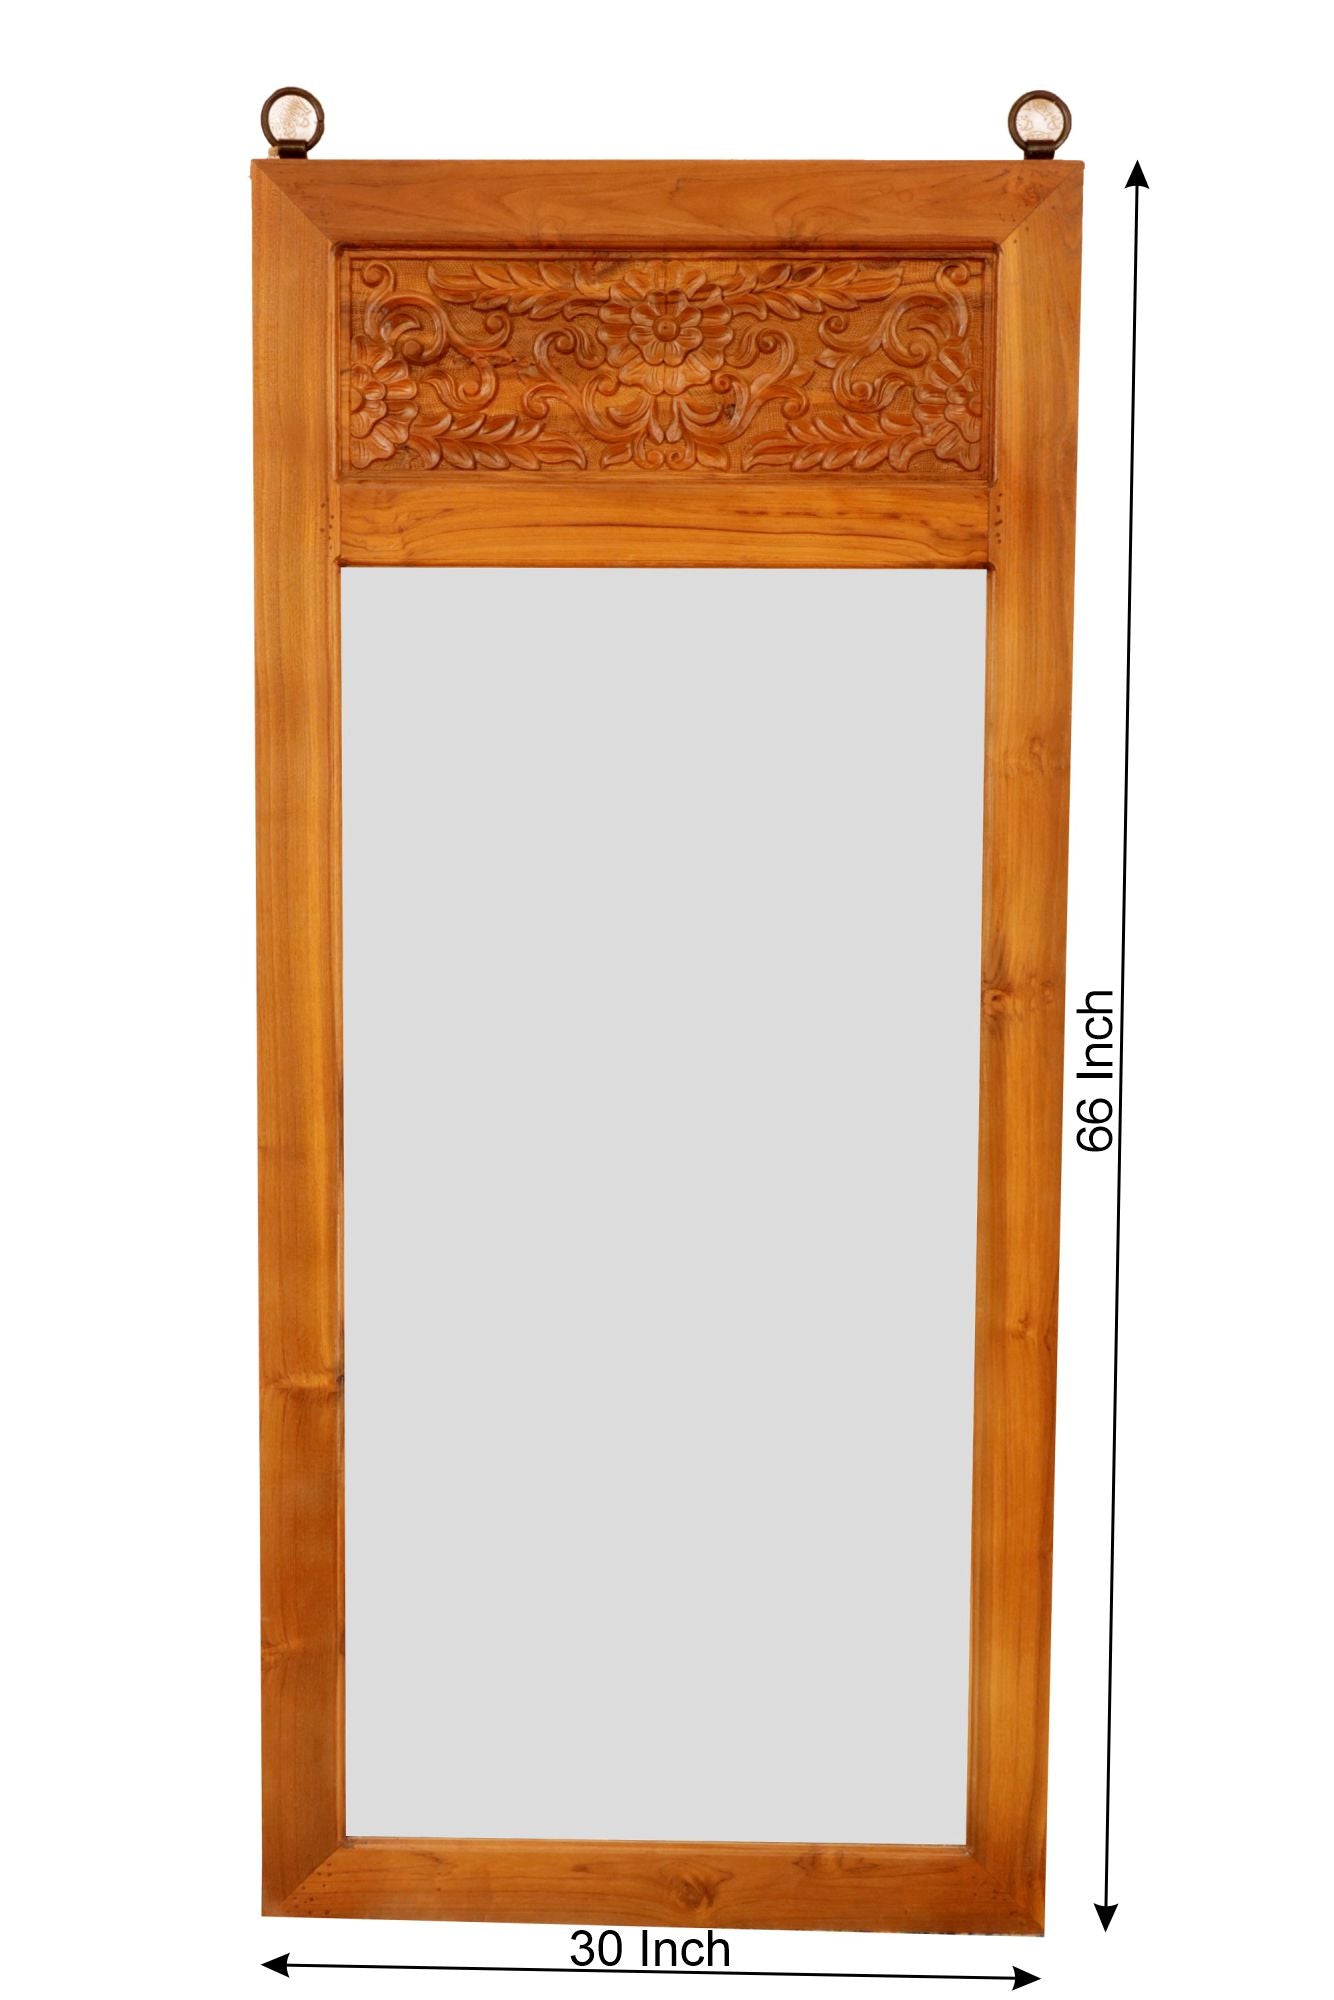 Solid Teak Royal Carved Mirror Mirror